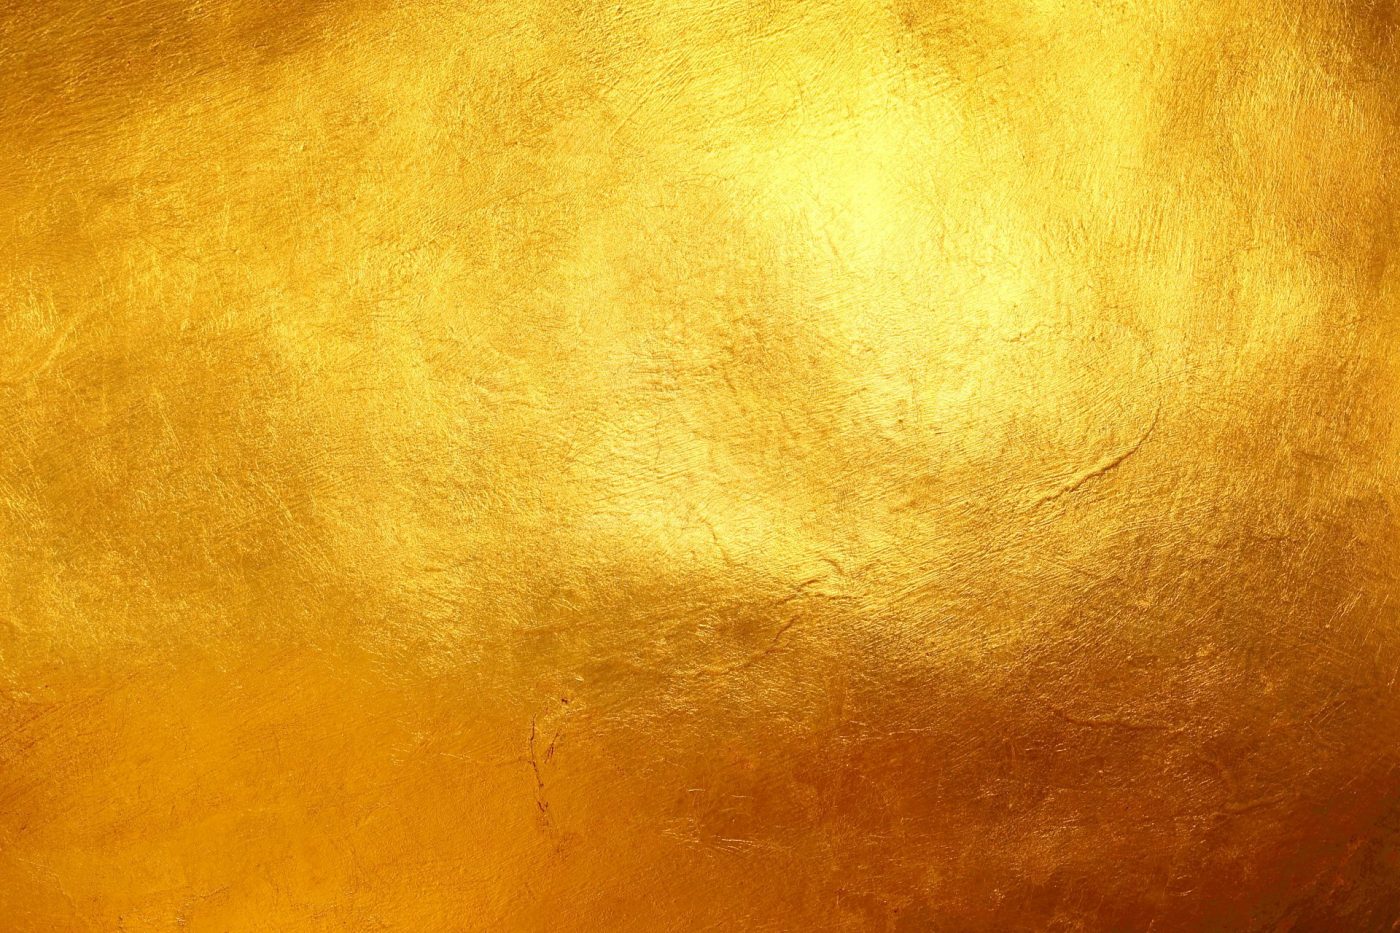 Vàng - Chào mừng bạn đến với thế giới của sự sang trọng và giàu có với hình ảnh về đường viền vàng, vật dụng làm bằng vàng và các chi tiết khác được sử dụng trong các bức tranh và ảnh về vàng. Hãy đắm mình trong không khí lấp lánh của cảm giác thịnh vượng mà màu sắc vàng mang lại.